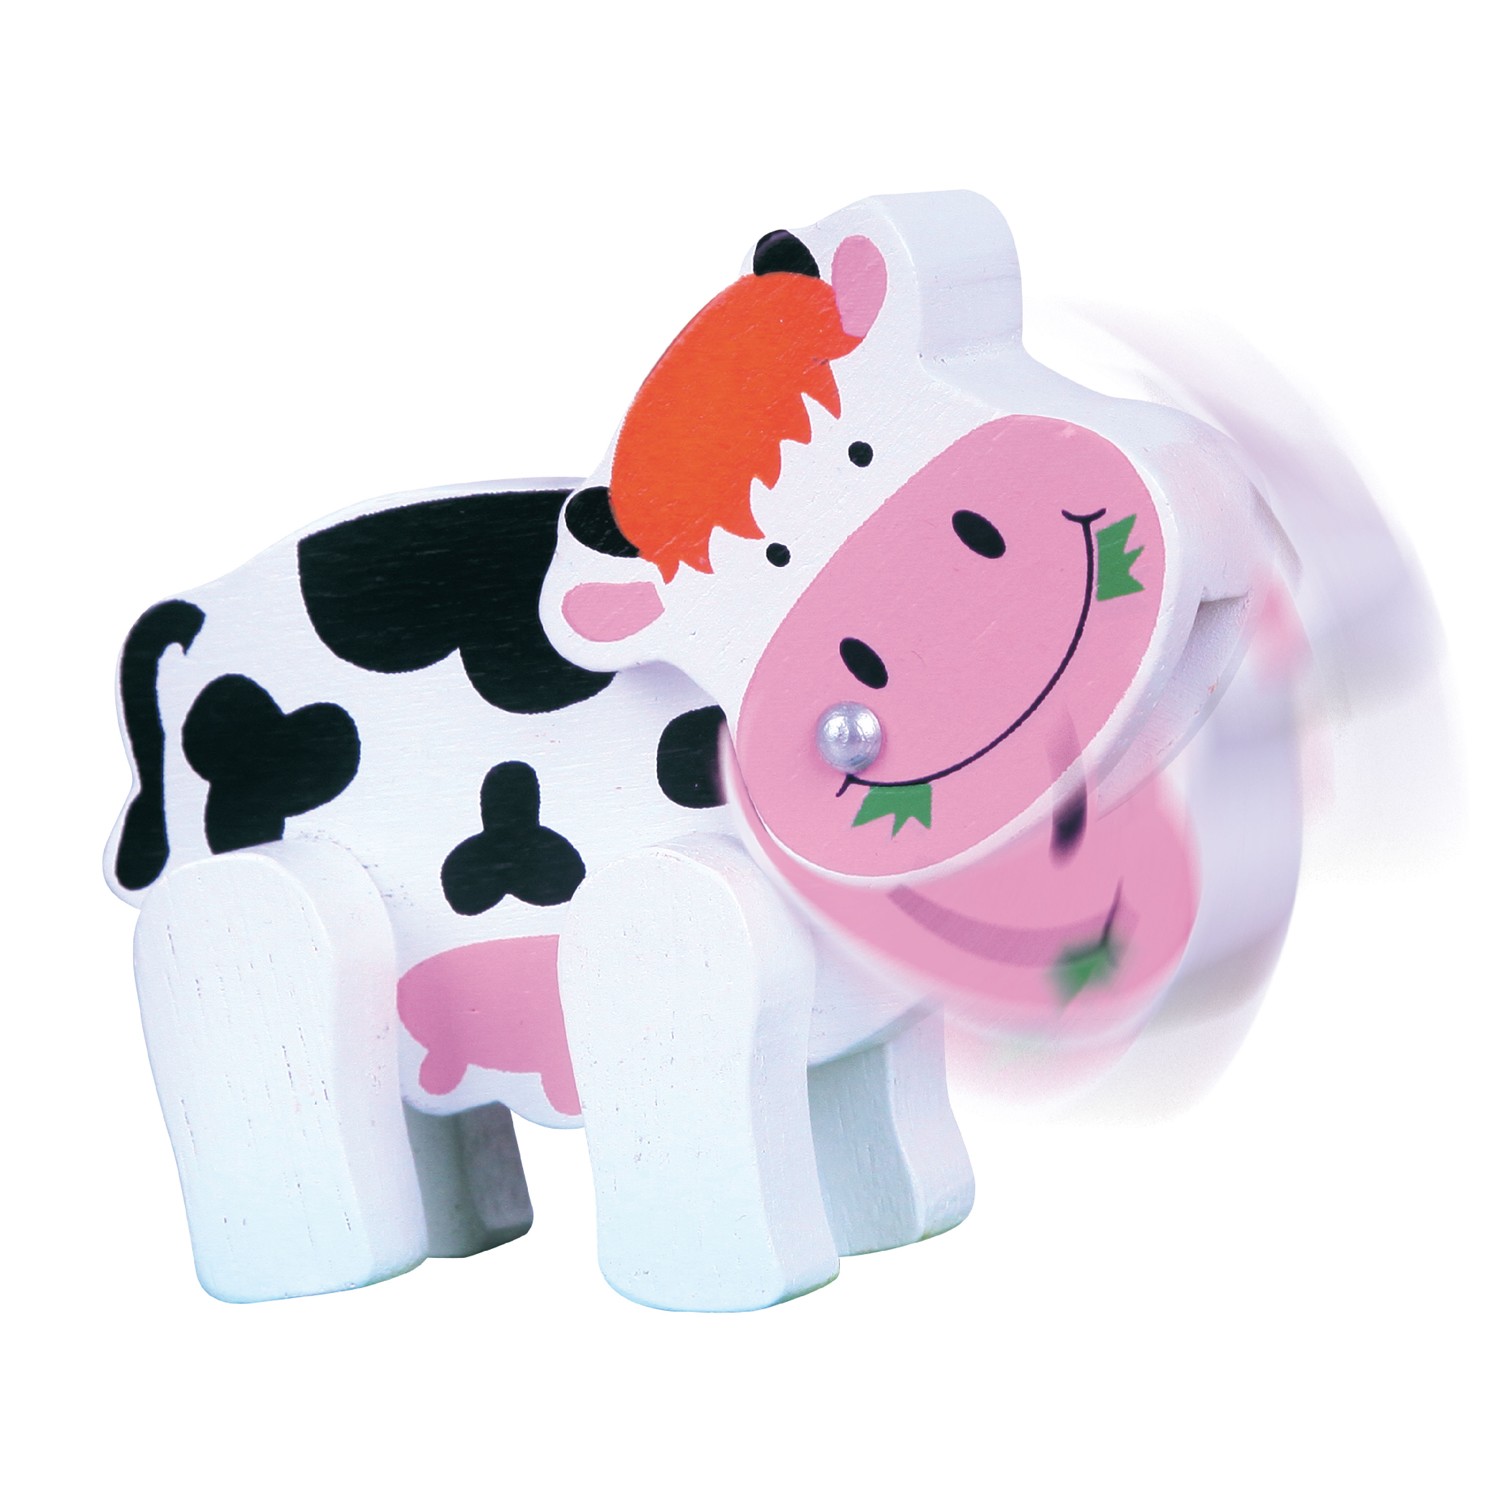 Дървена играчка лабиринт с крава - бебешка играчка от Viga toys-bellamiestore